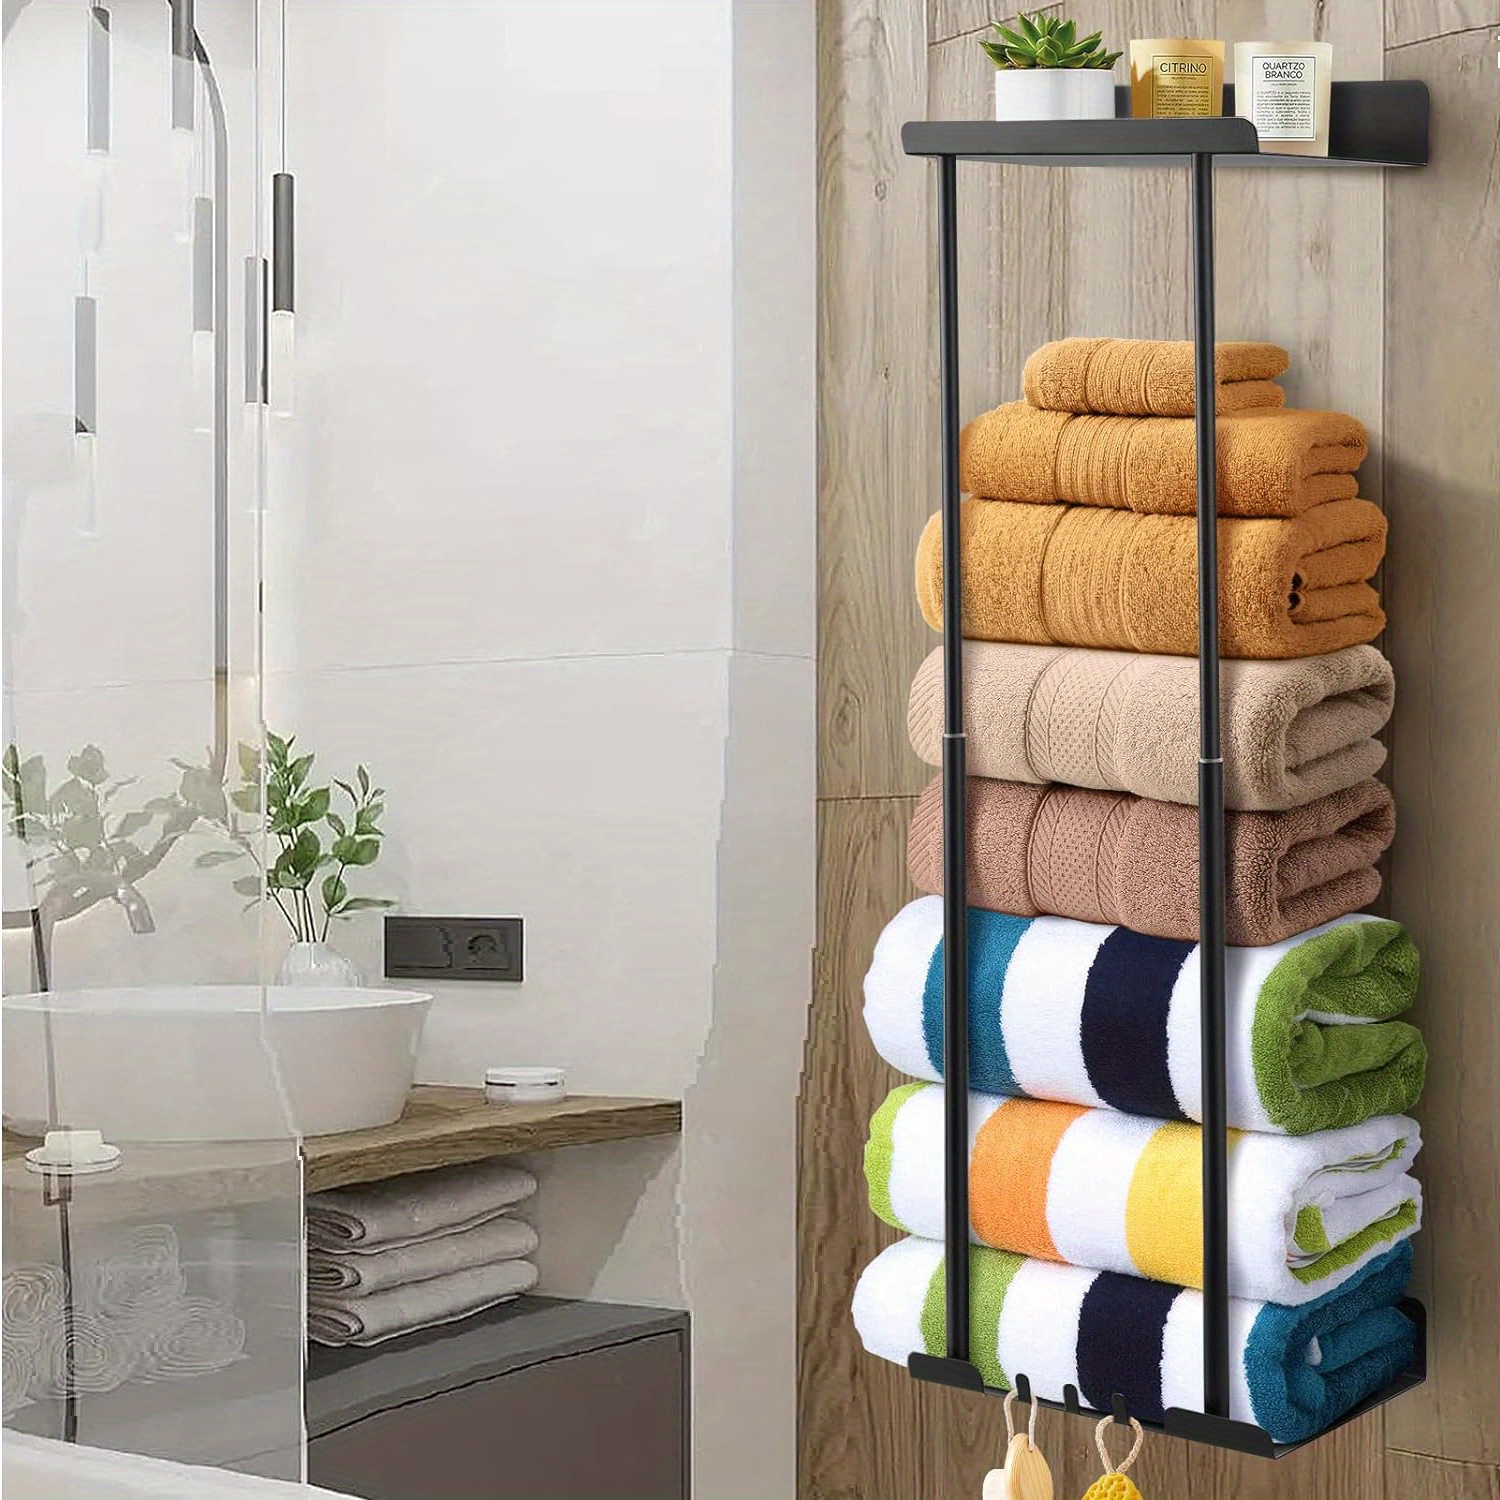 Toallero para baño, toallero montado en la pared con 2 ganchos para  toallas, adhesivo sin taladrar ni perforar, soporte para toallas de baño,  estante